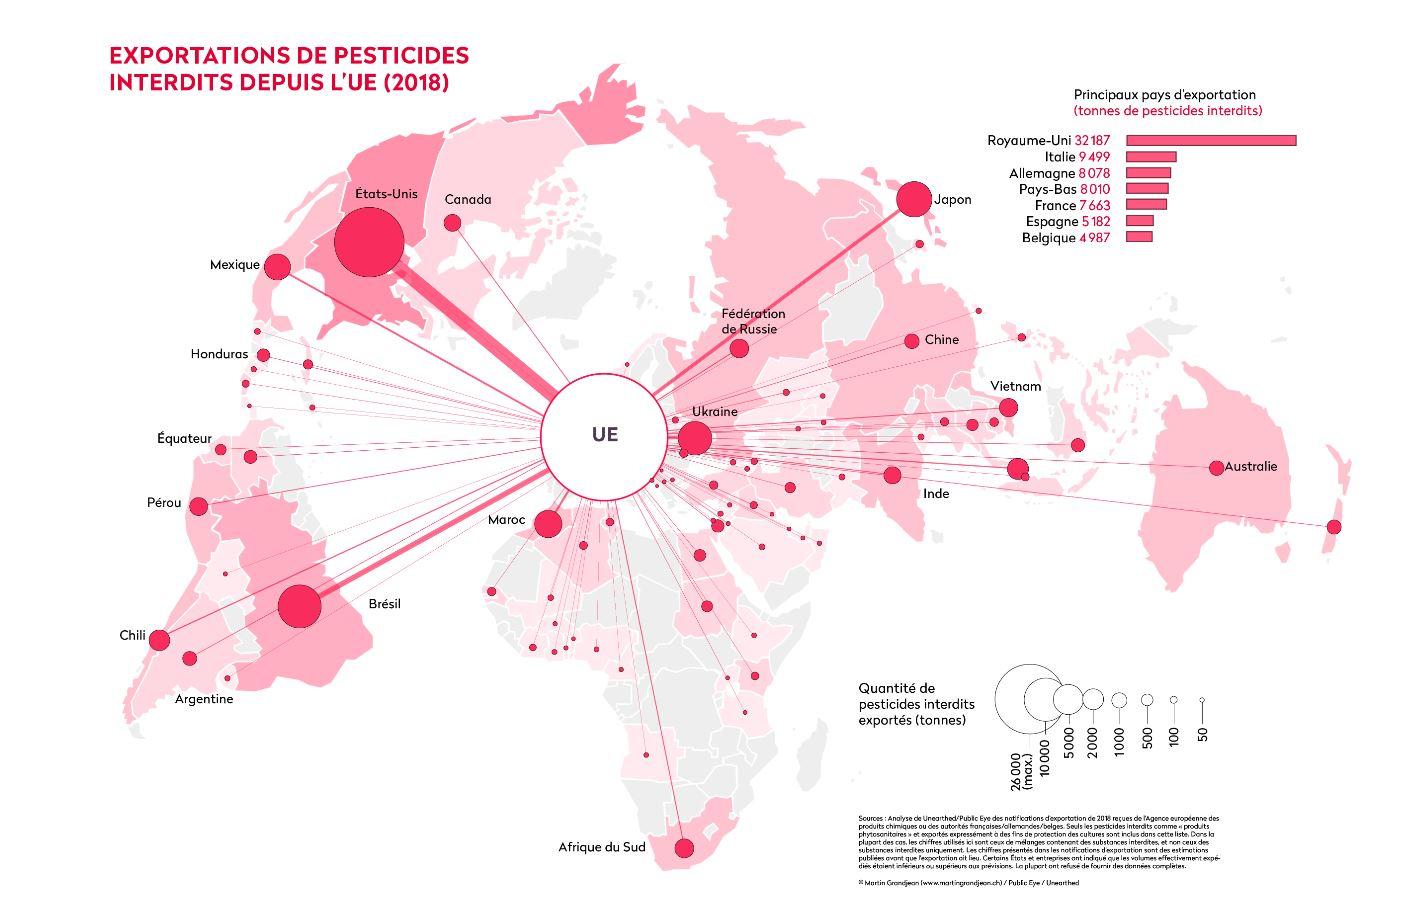 La liste des principaux exportateurs de pesticides interdits et les pays de destinations. [Public Eye]